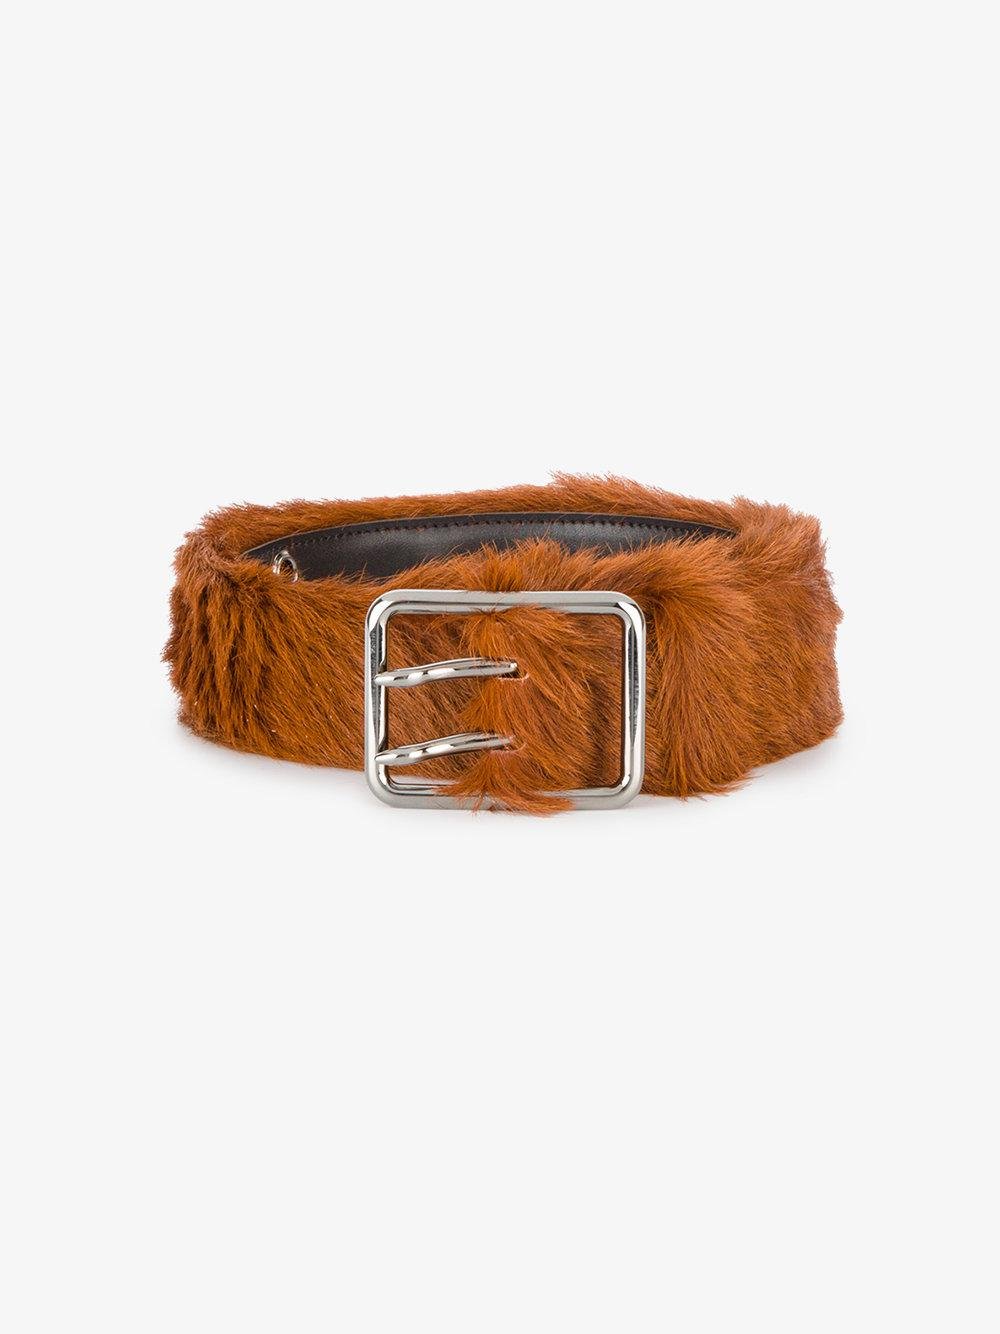 Prada Furry Belt in Brown for Men - Lyst